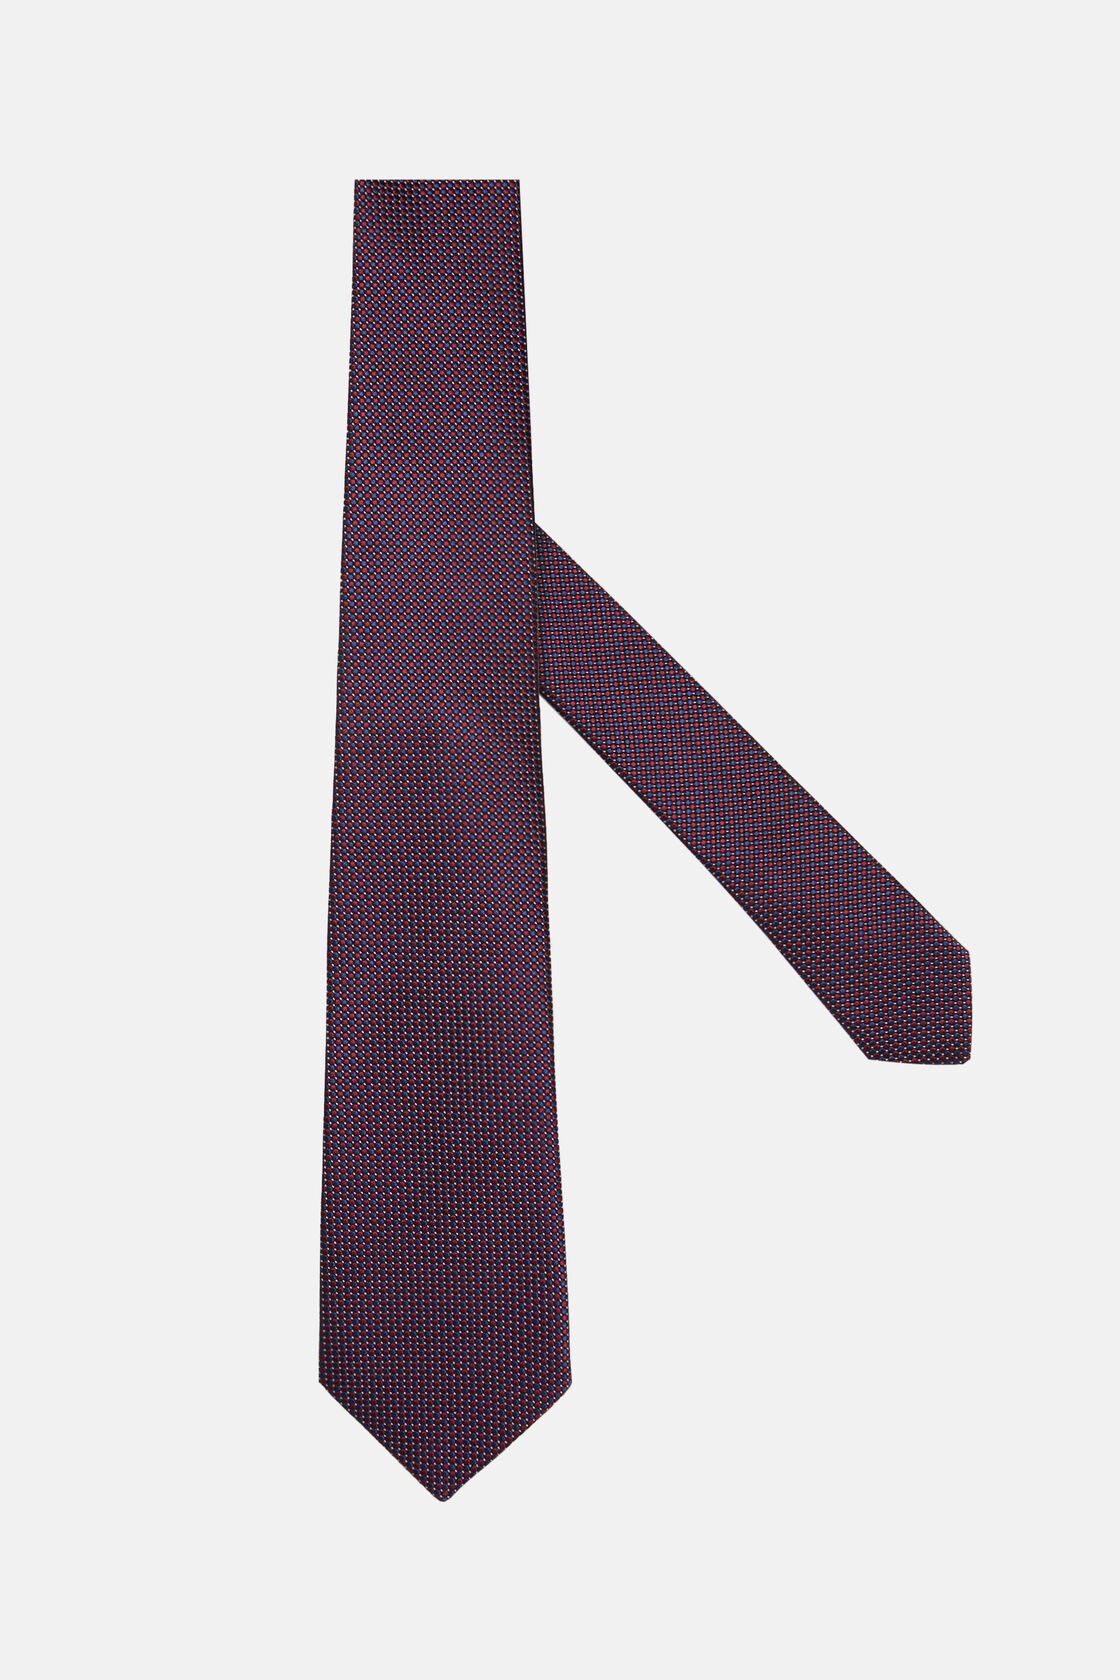 Πουά γραβάτα από σύμμεικτο μετάξι, Burgundy, hi-res